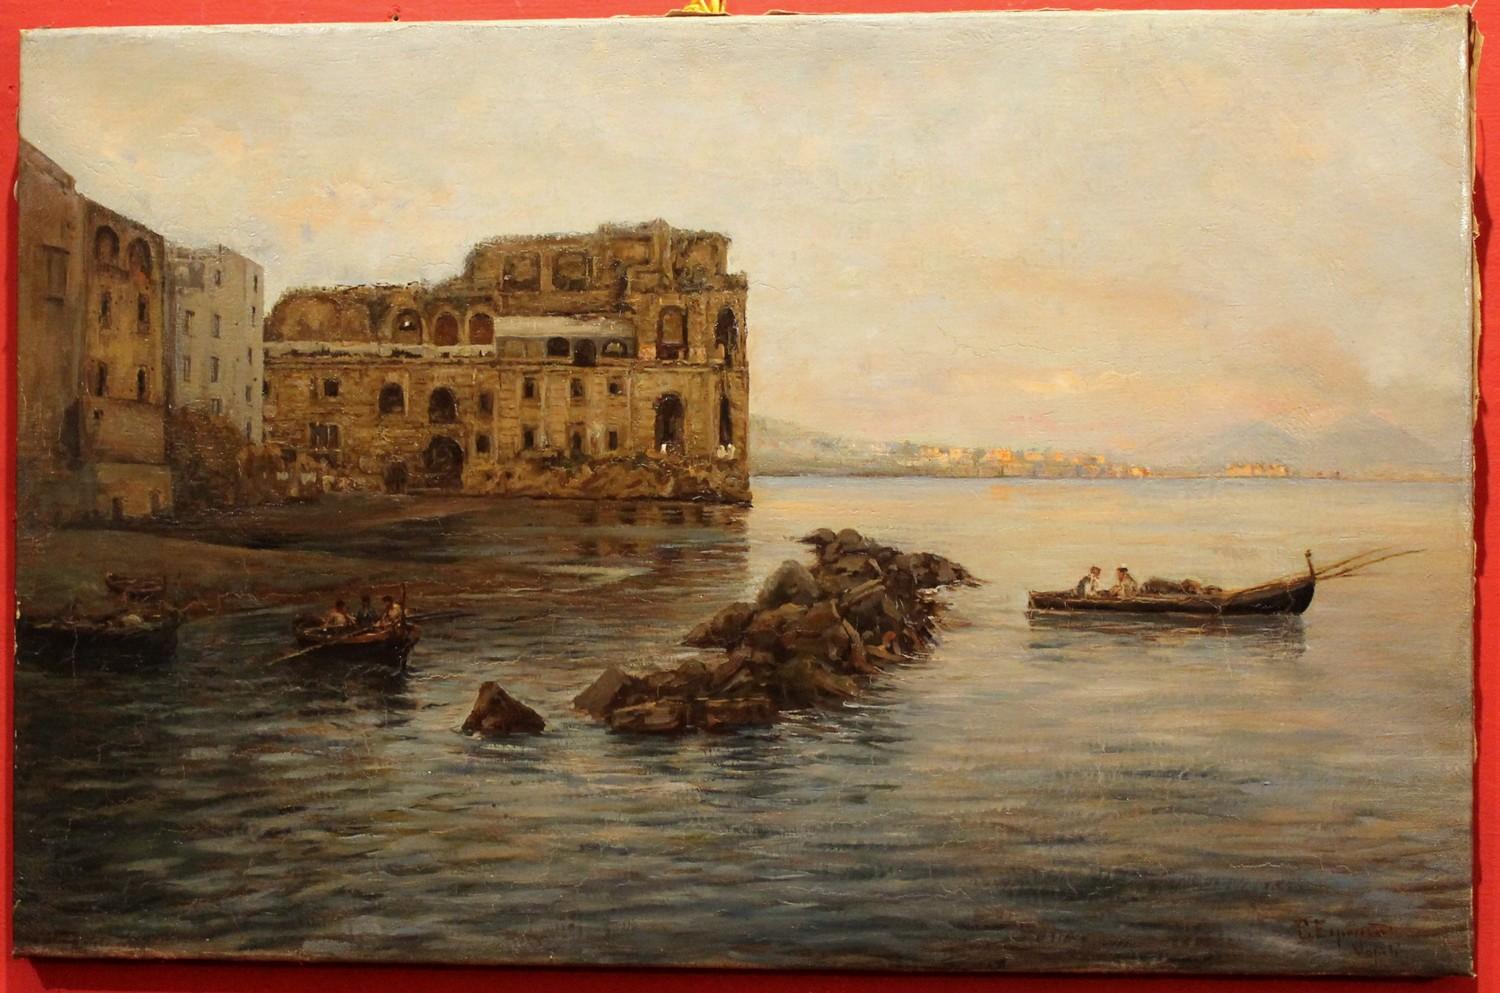 Peinture impressionniste italienne de paysage maritime - Vue de la baie de Naples et du château 2